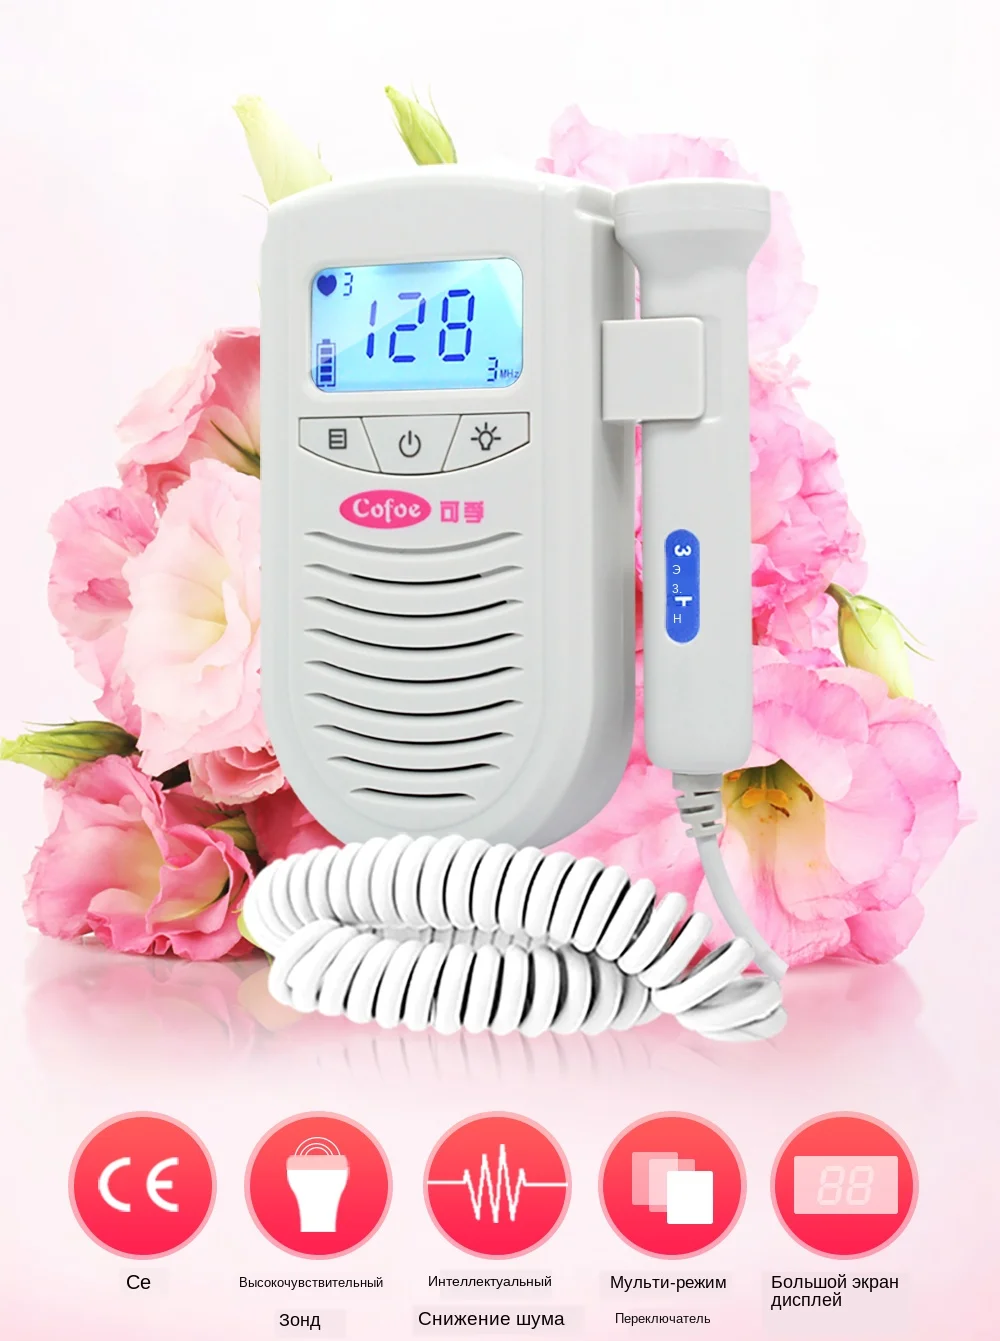 Cofoe фетальный Doppler детектор сердцебиения уход за ребенком бытовой портативный для беременных плода измеритель пульса без излучения стетоскоп